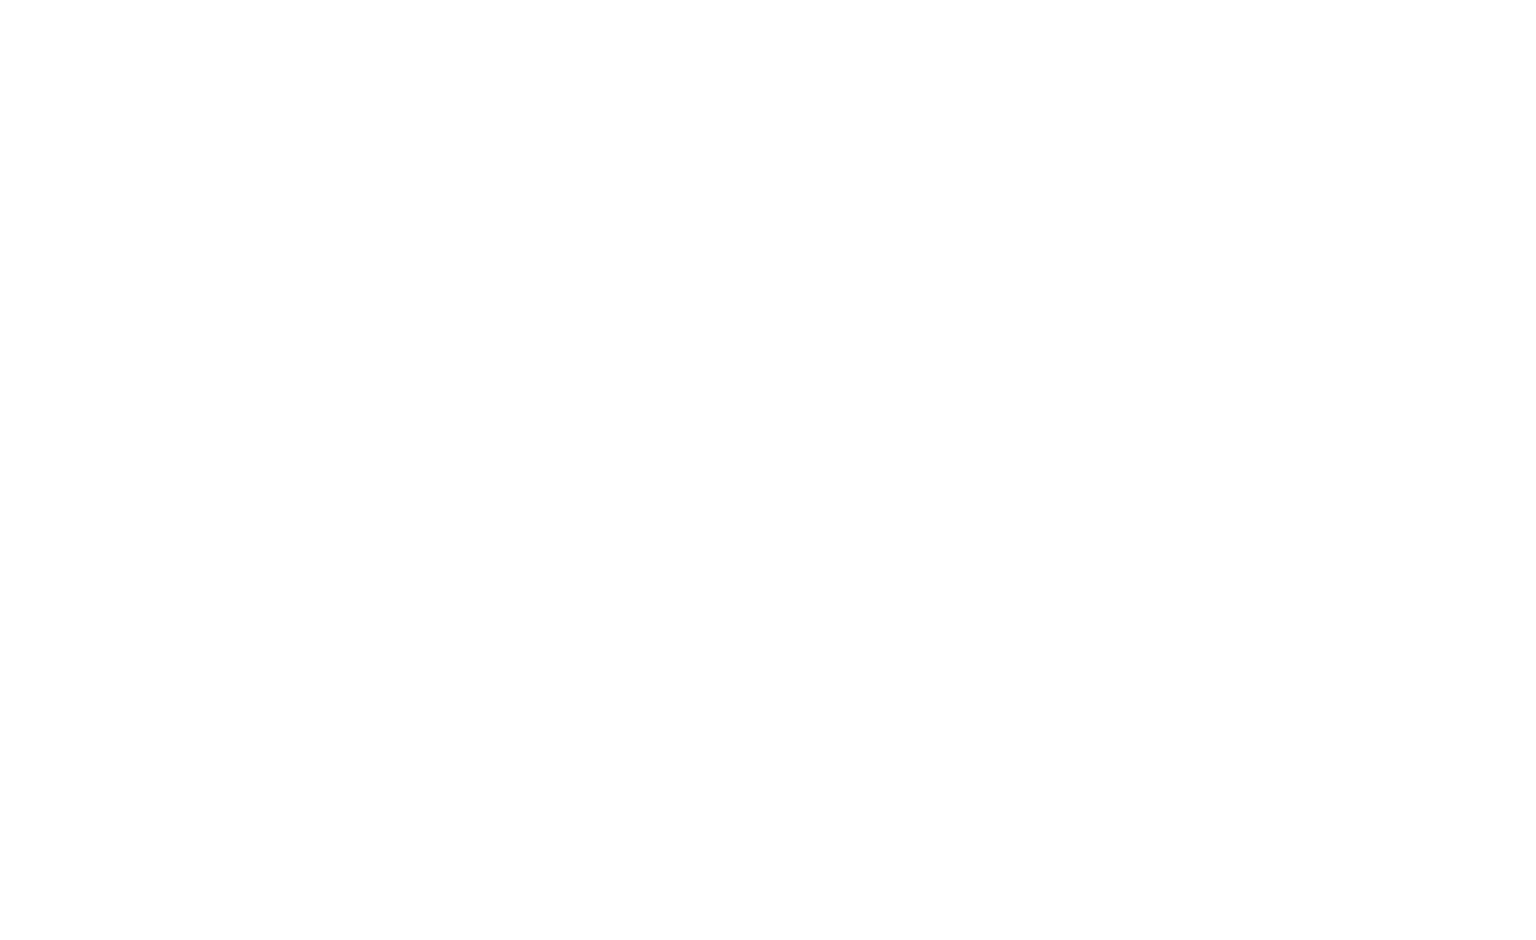 Mr. Service-Mannheim online